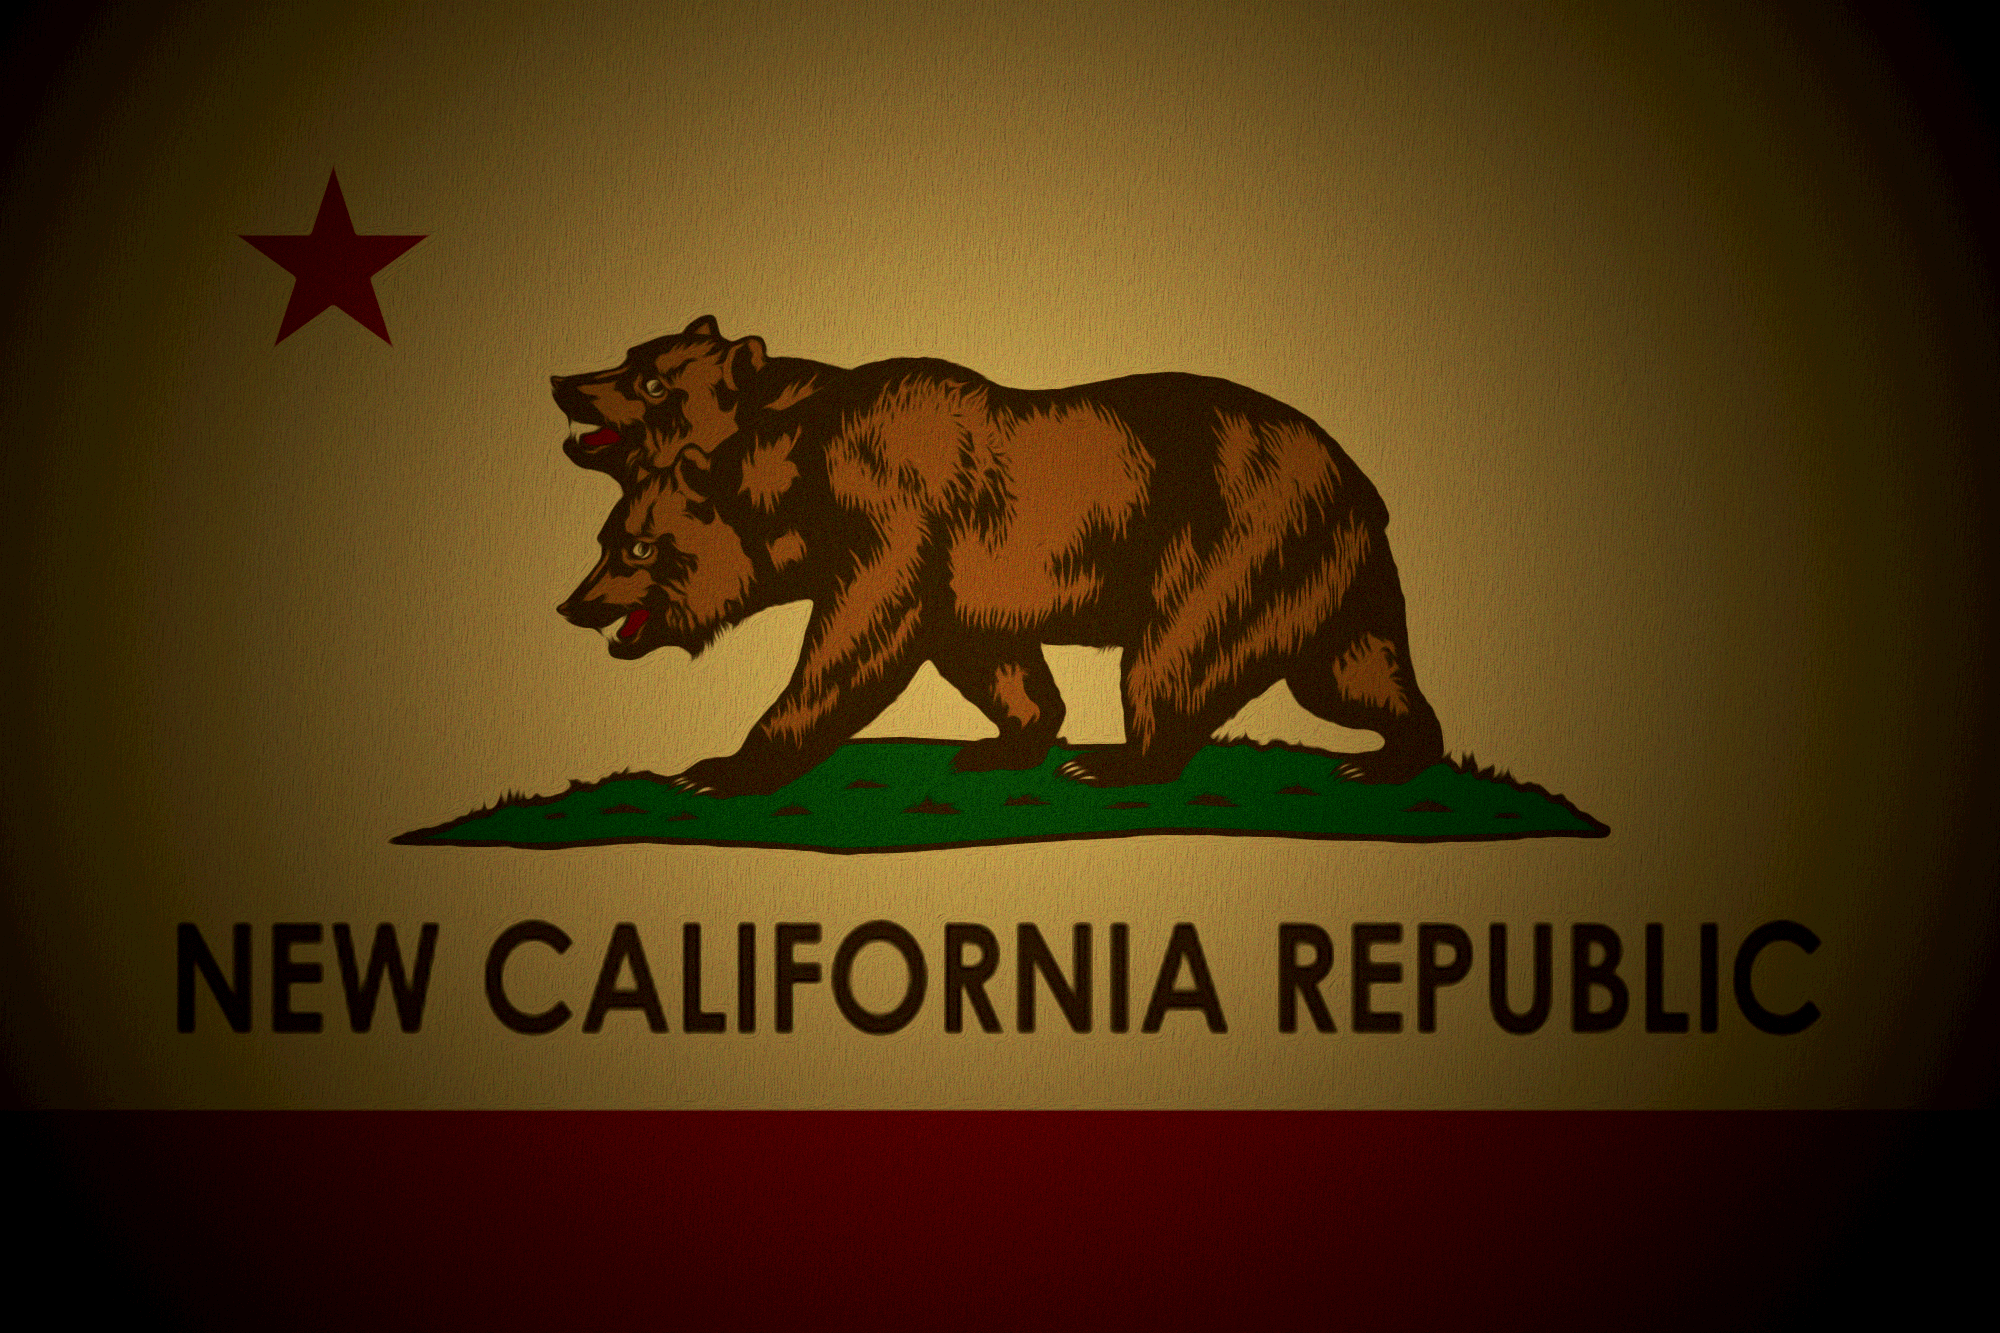 New California Republic Pictures